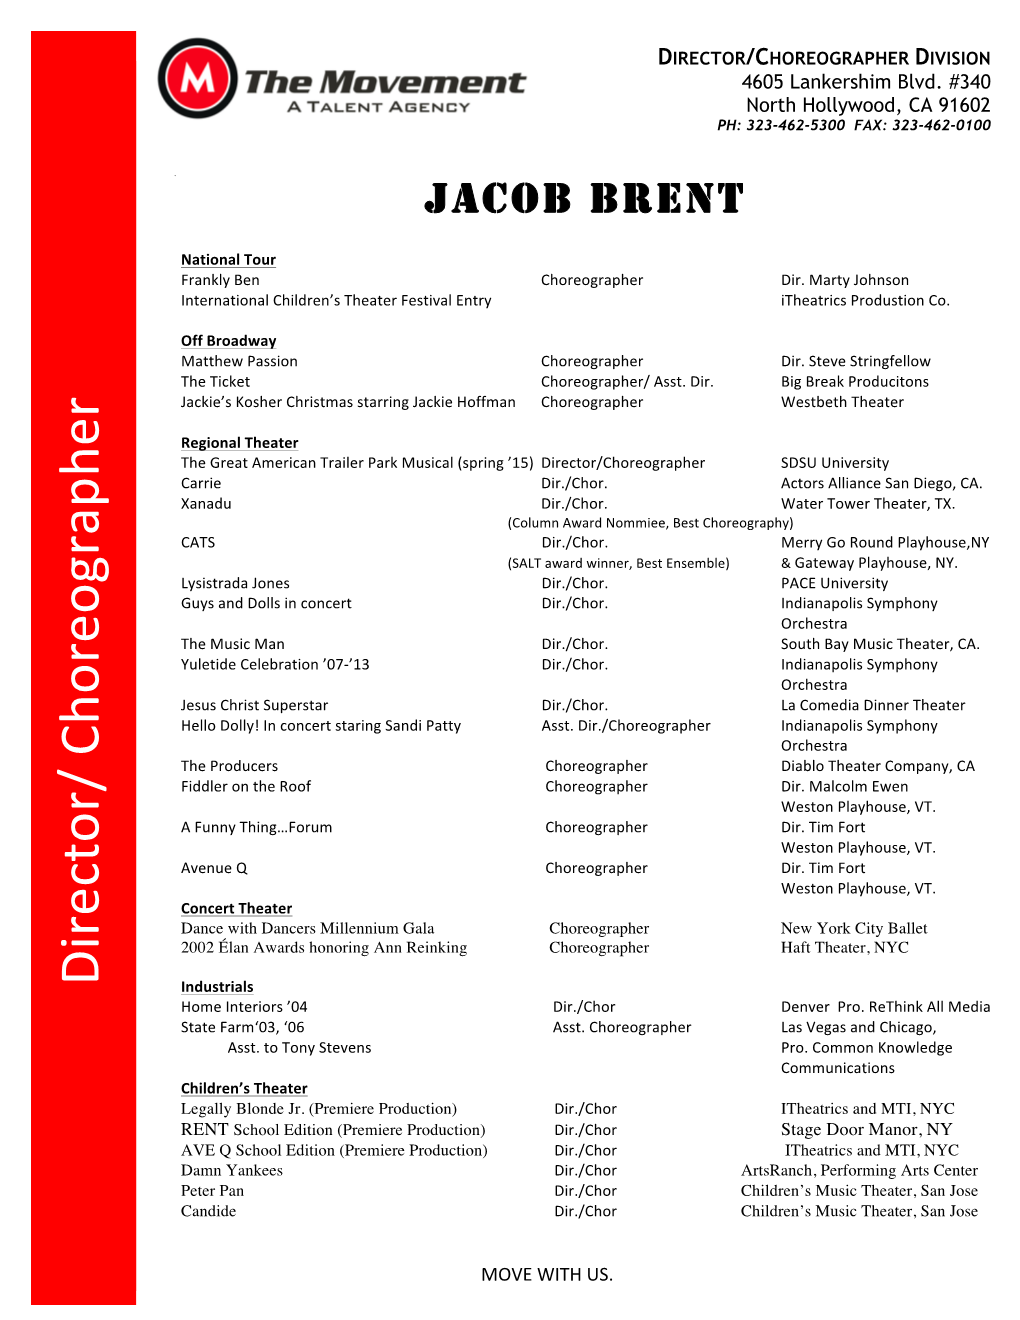 Jacob Brent's Resume MTA 1-15